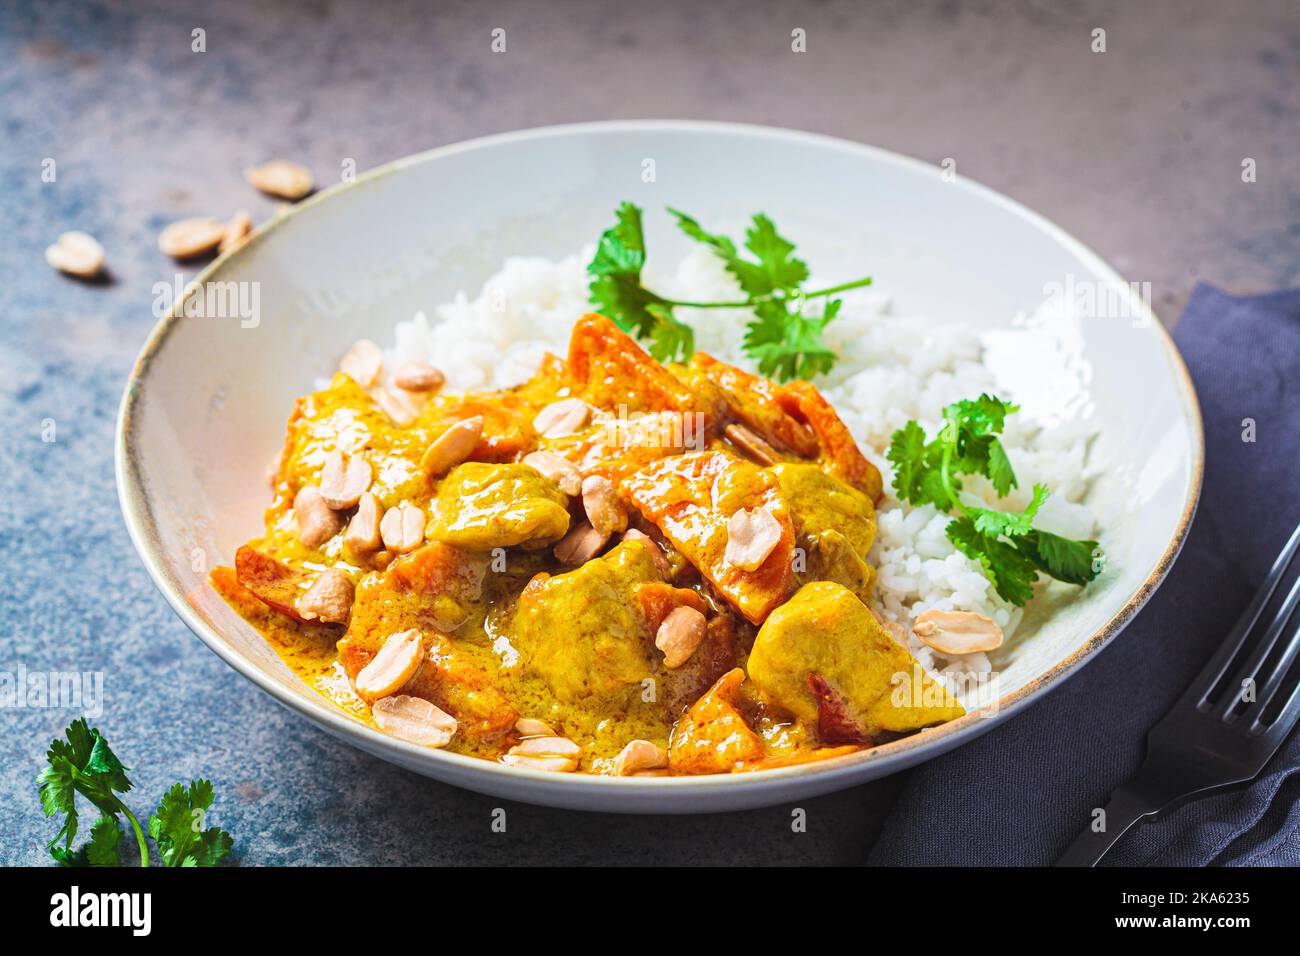 Thailändisches Hühnchen- und Erdnusscray mit Reis in grauer Schüssel, dunkler Hintergrund. Konzept der asiatischen Küche. Stockfoto